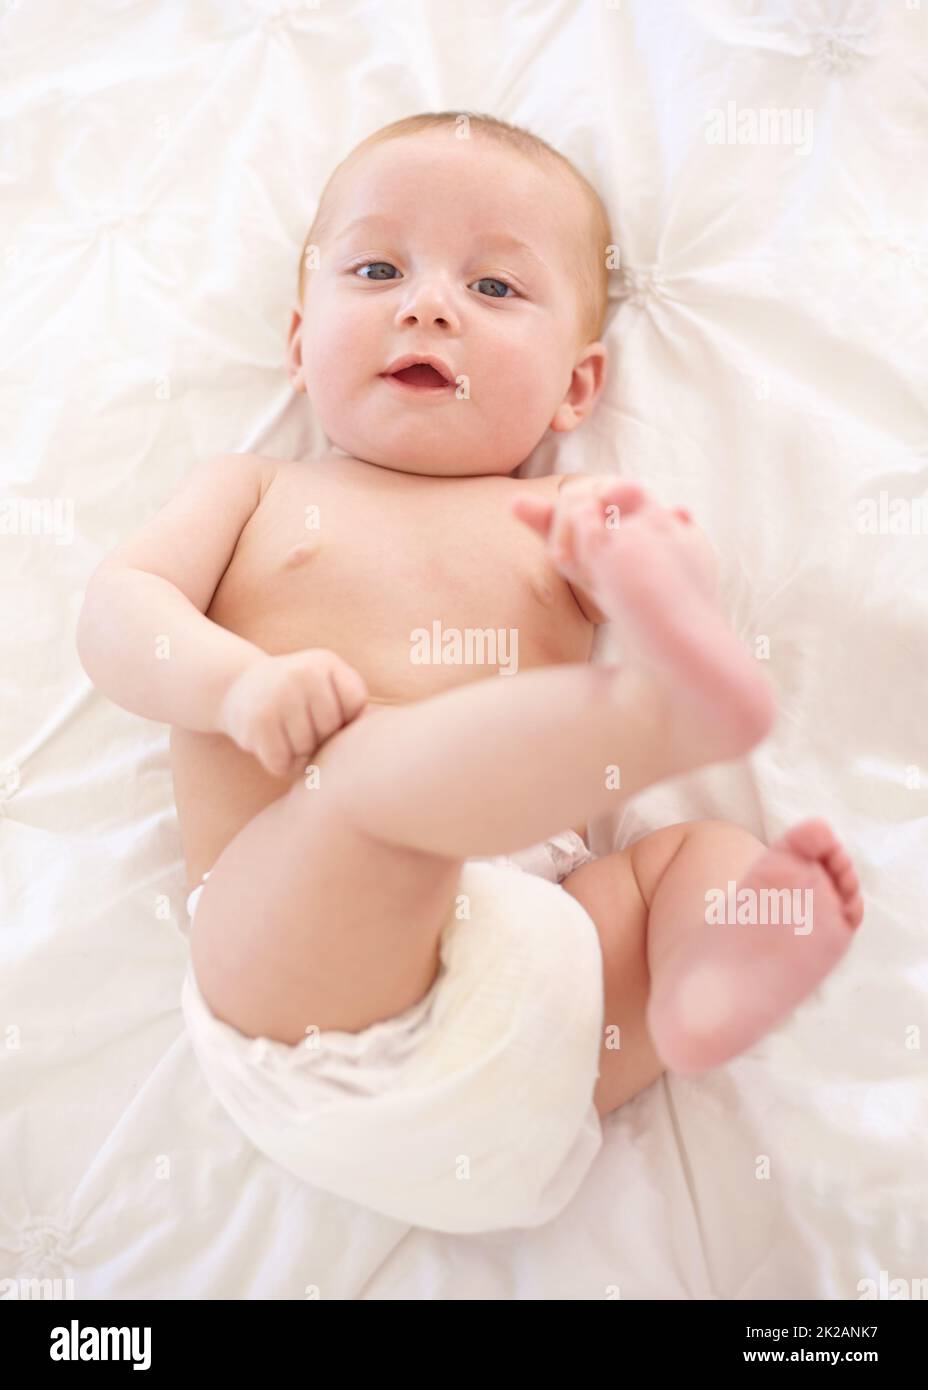 Es gibt eine große weite Welt zu erkunden.... Niedliches kleines Baby, das sich hinlegt und seine Füße berührt. Stockfoto